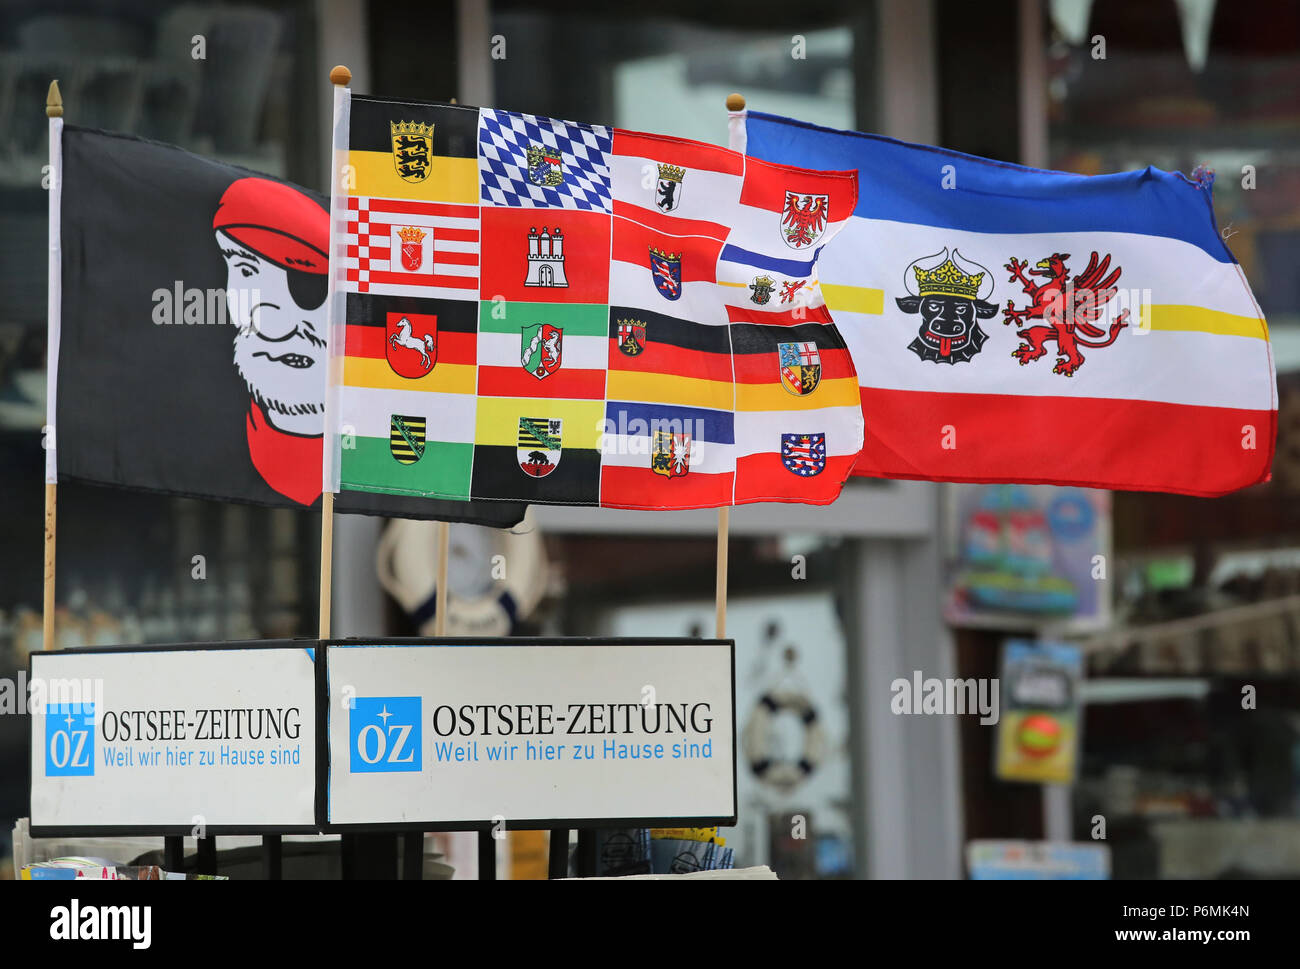 Warnemuende, bandera pirata, bandera de Mecklemburgo-Pomerania Occidental y la bandera de la Alemana Bundelaender Foto de stock